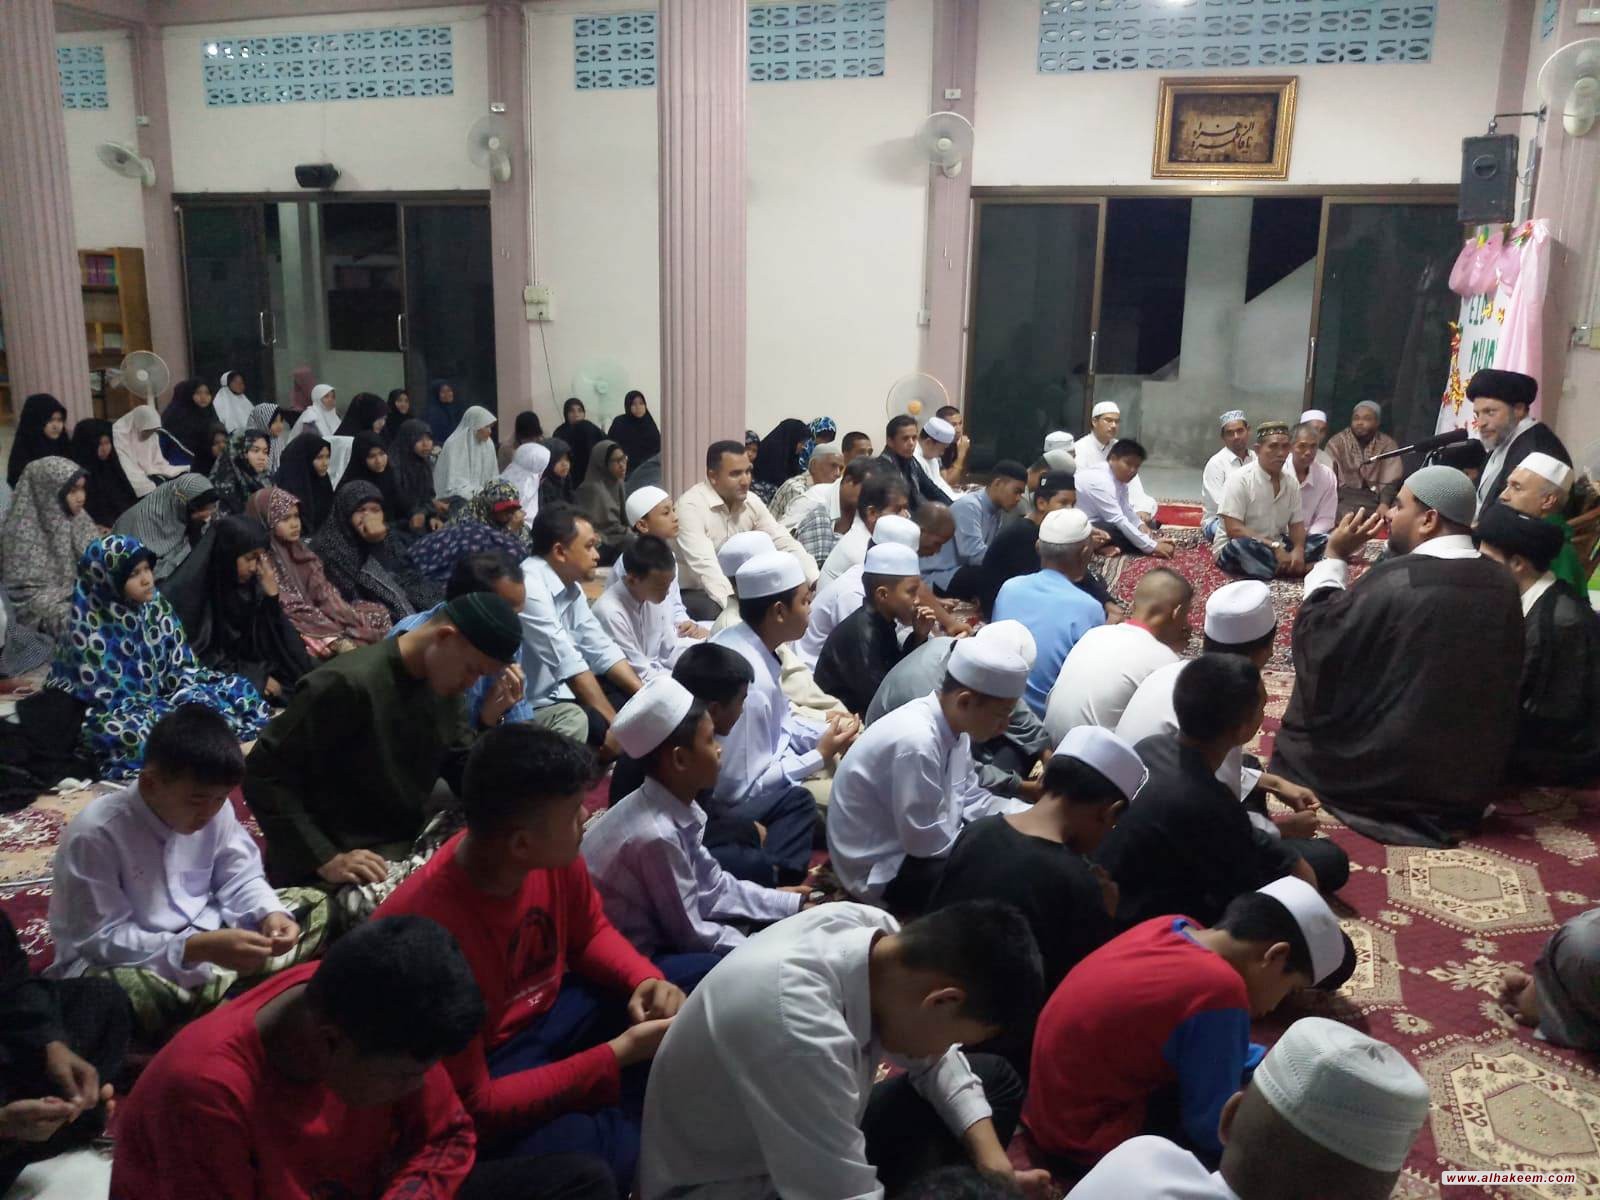 وفد مكتب سماحة المرجع الكبير السيد الحكيم (مدّ ظله) يلتقي المؤمنين في عدد من المساجد والحسينيات في بانكوك وجنوب تايلند